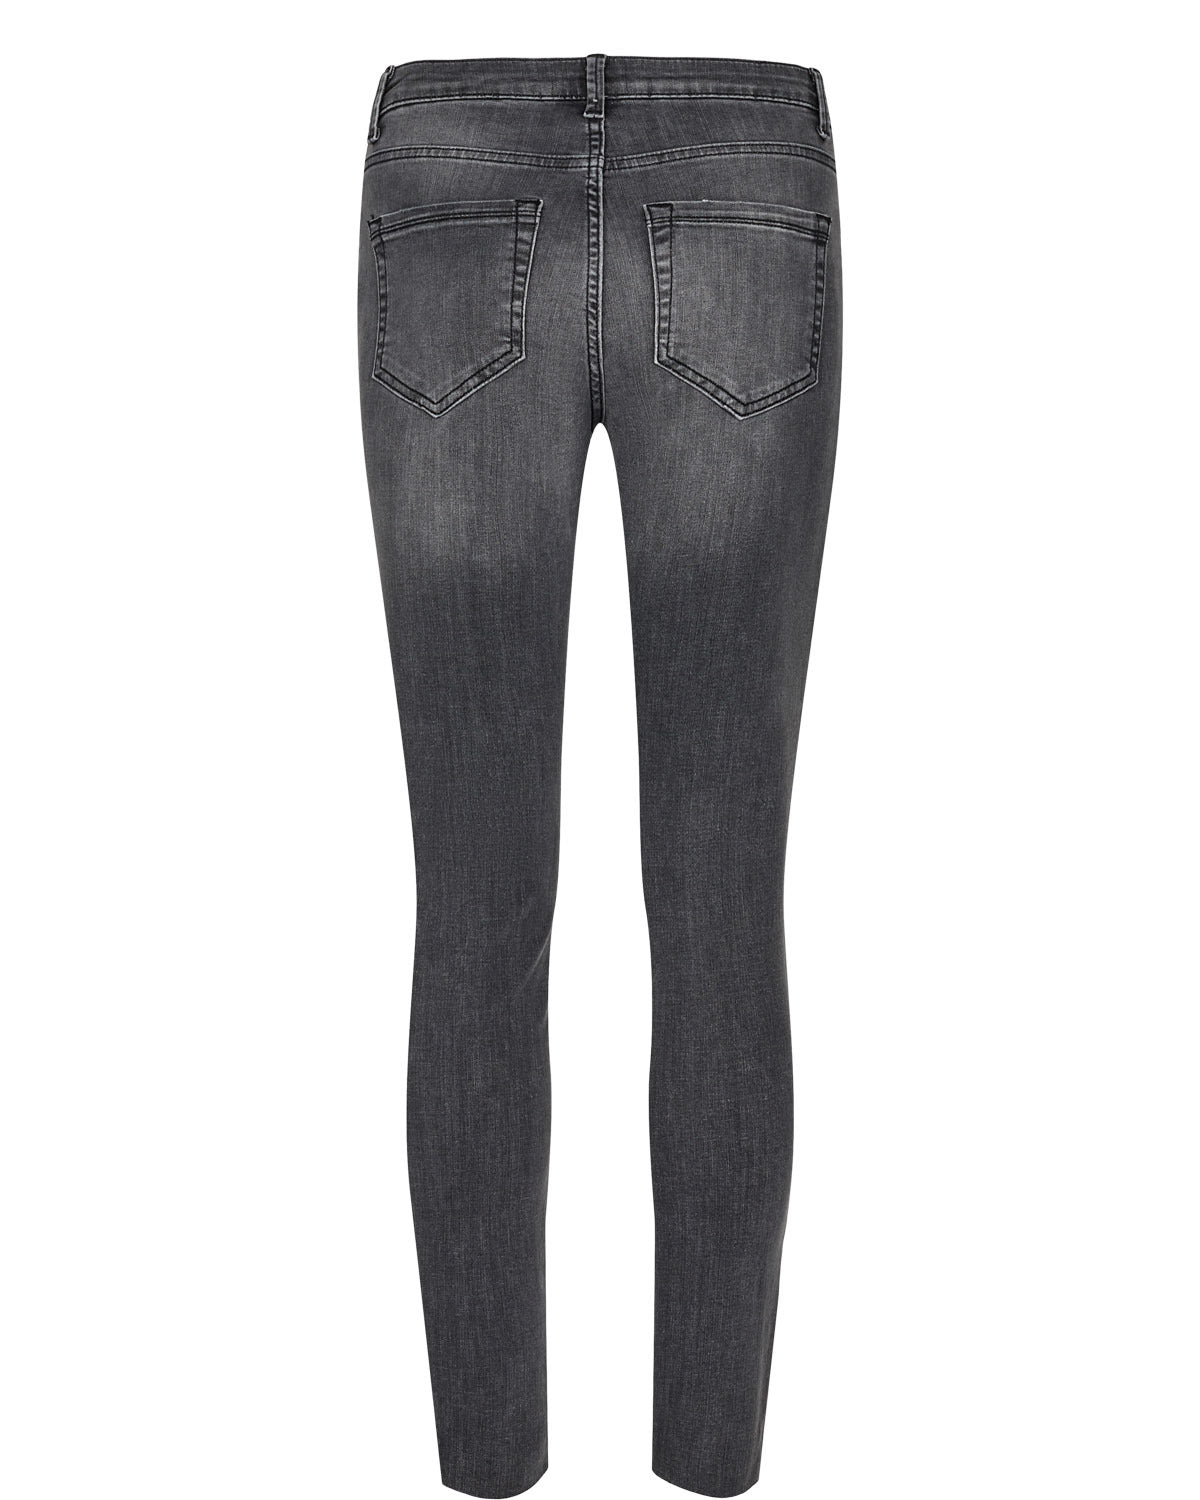 
                  
                    NUSIDNEY Dark Grey Denim Cropped Jeans
                  
                